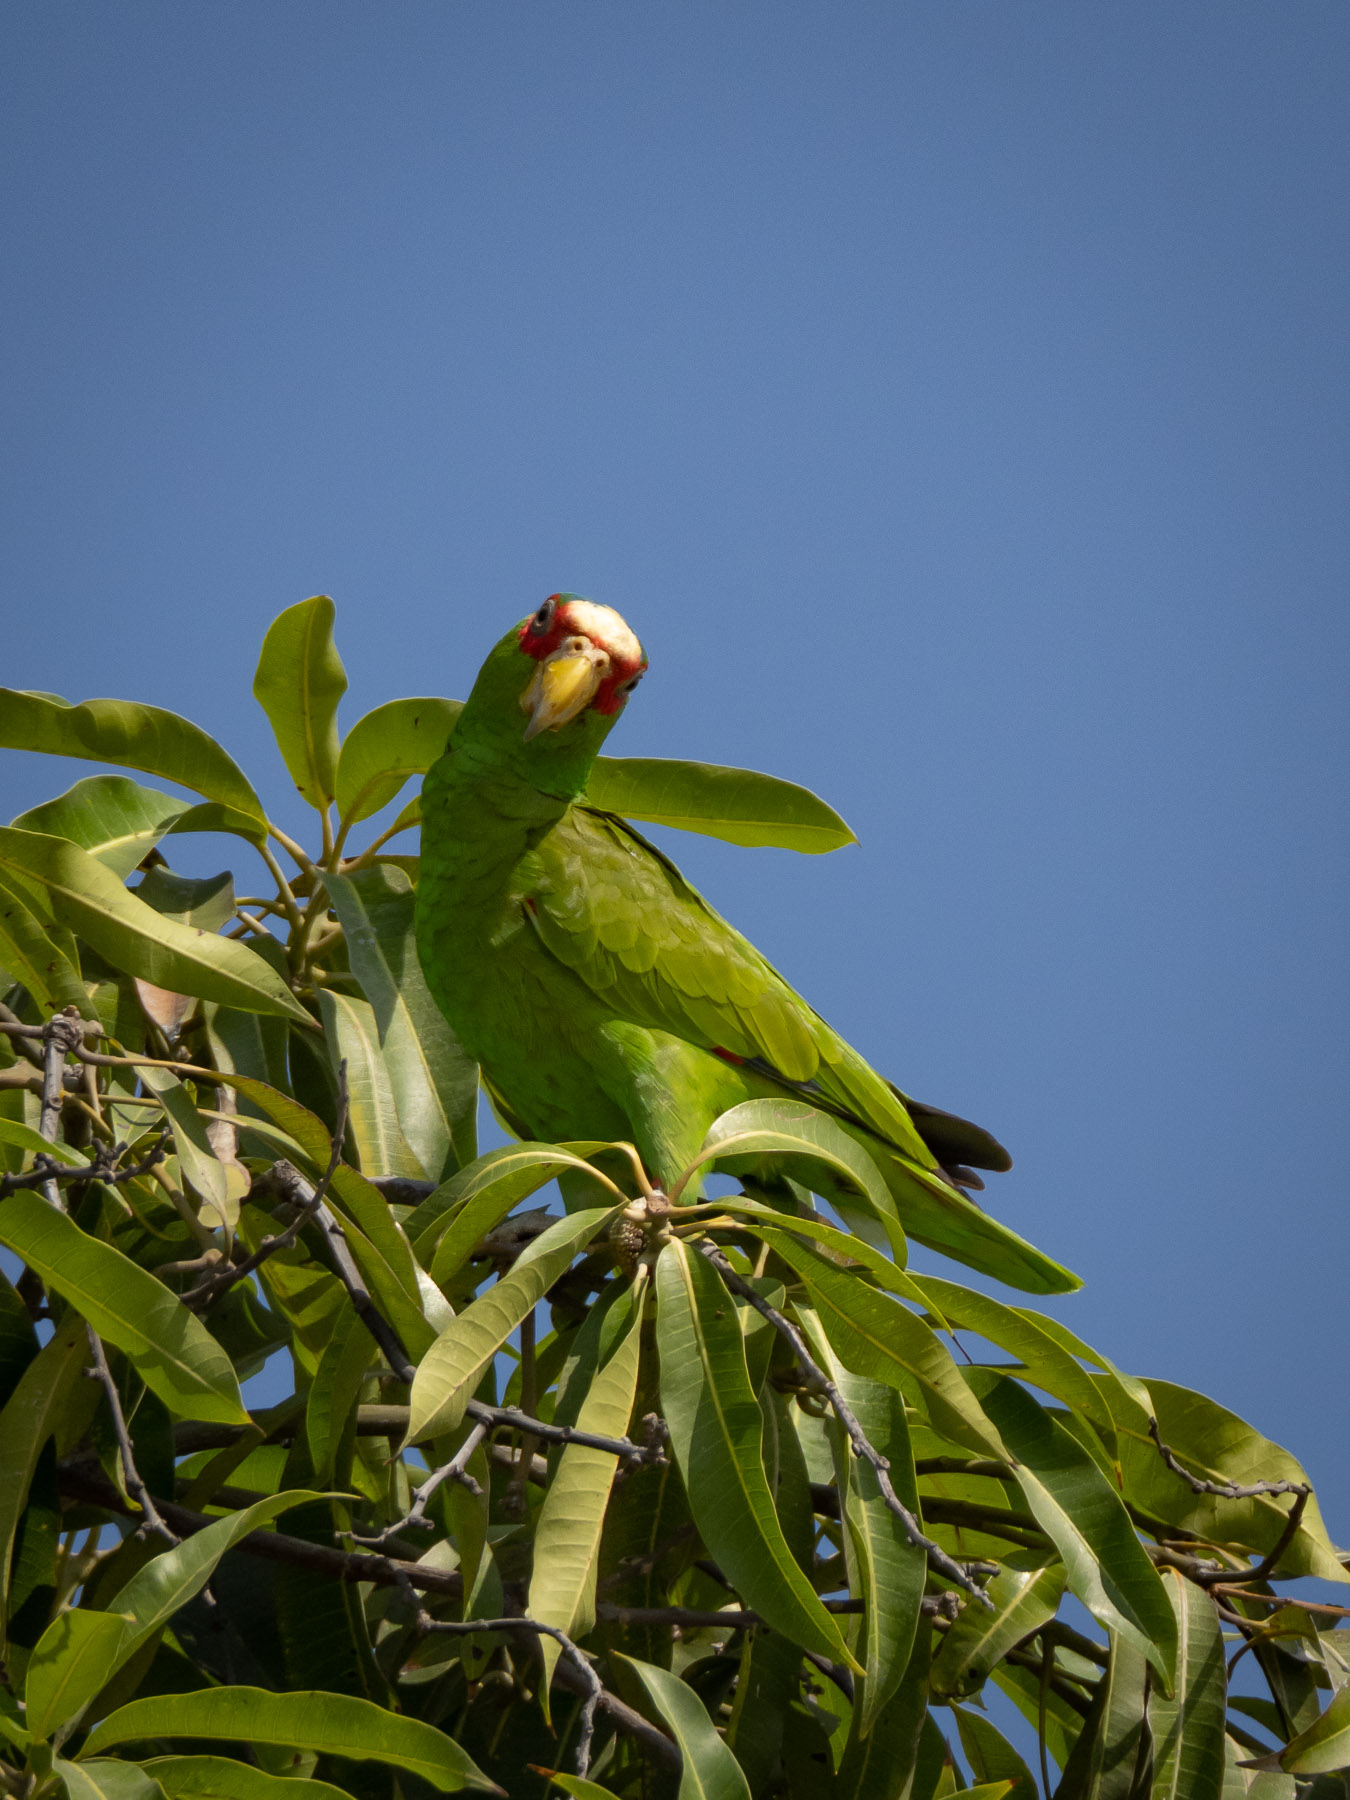 Небольшой зелёный попугай, обитающий в тропических лесах центральной Америки. Тихоокеанское побережье Мексики, Хуатулко, март 2021. Автор фото: Сутормина Марина